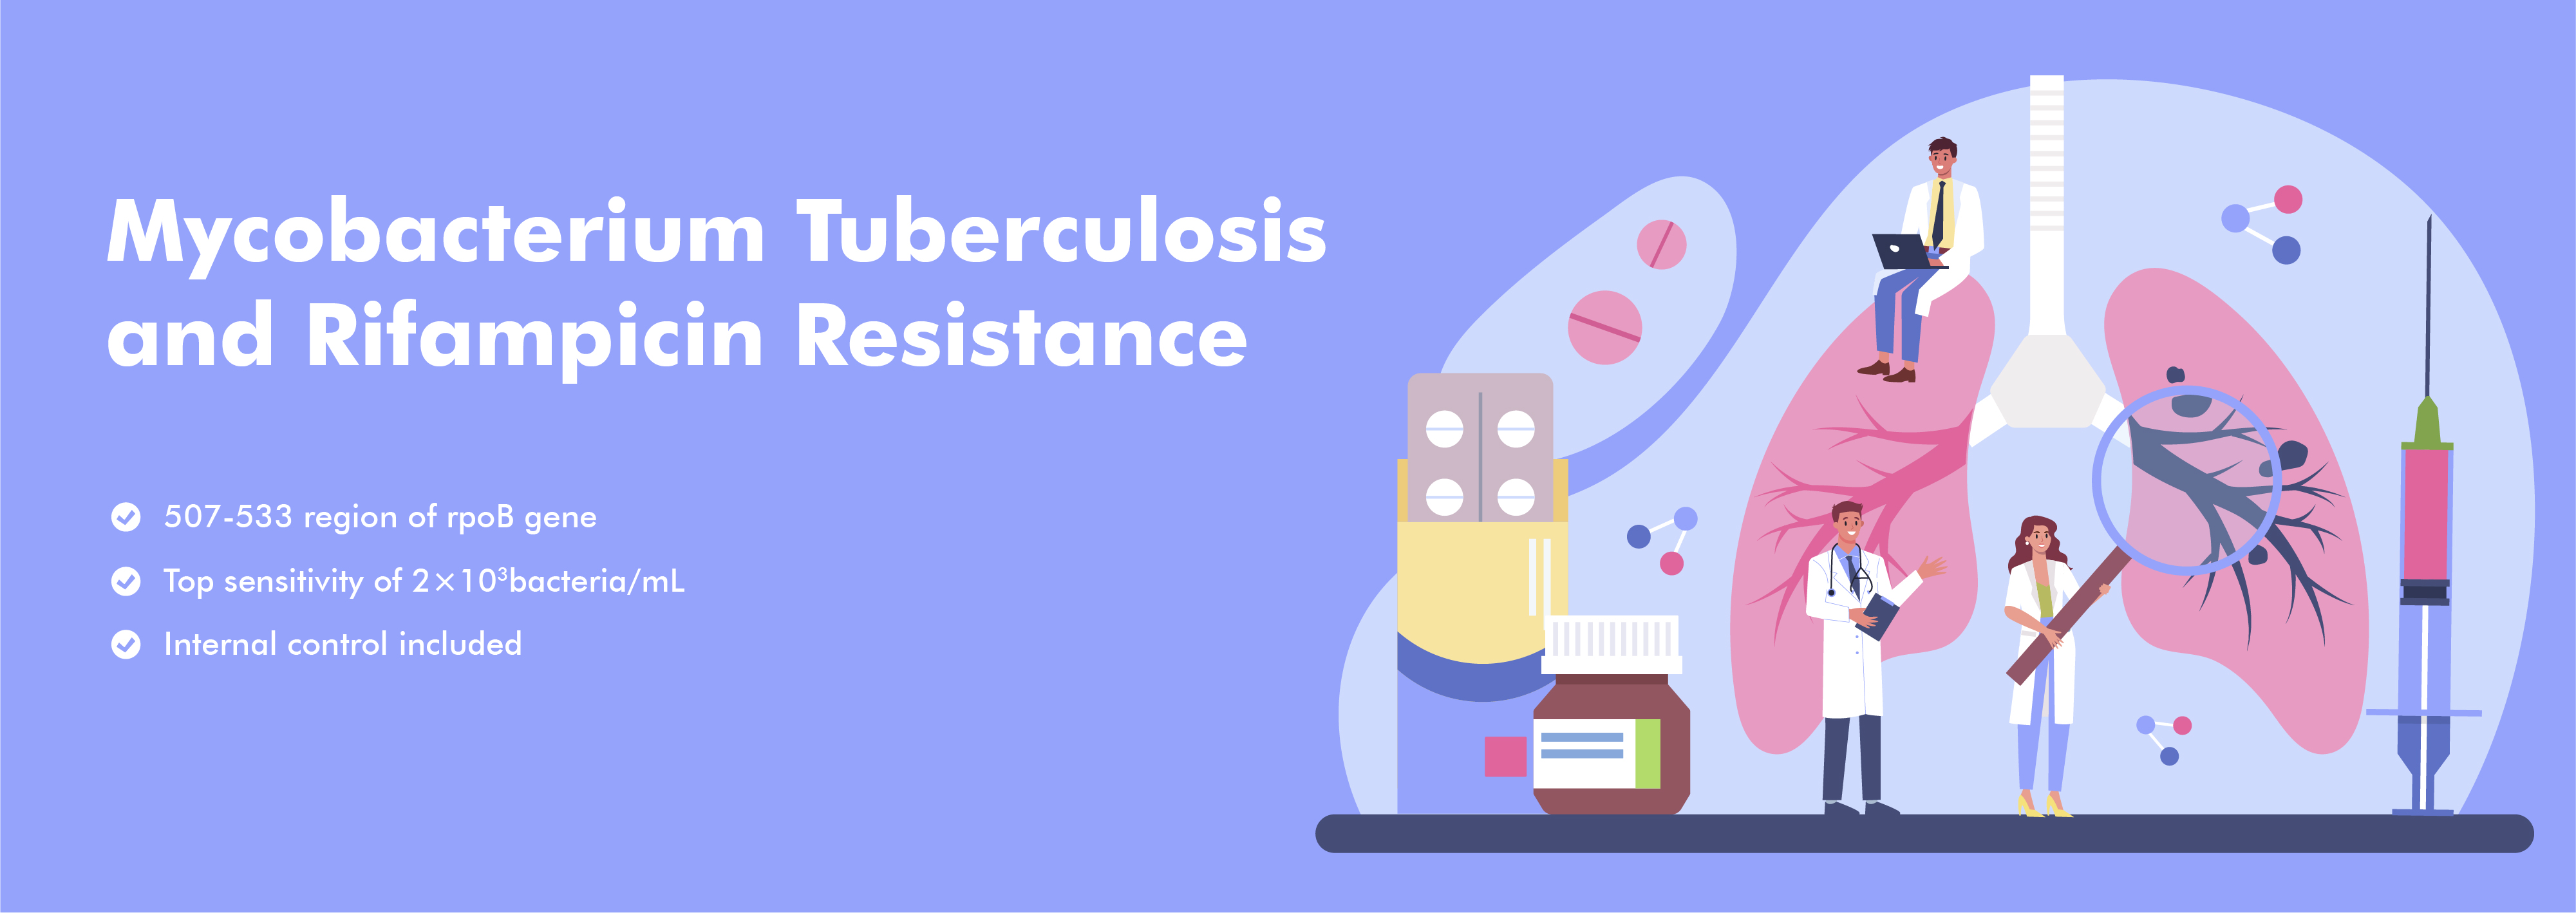 Mycobacterium Tuberculosis nukleiinhappe- ja rifampitsiiniresistentsus